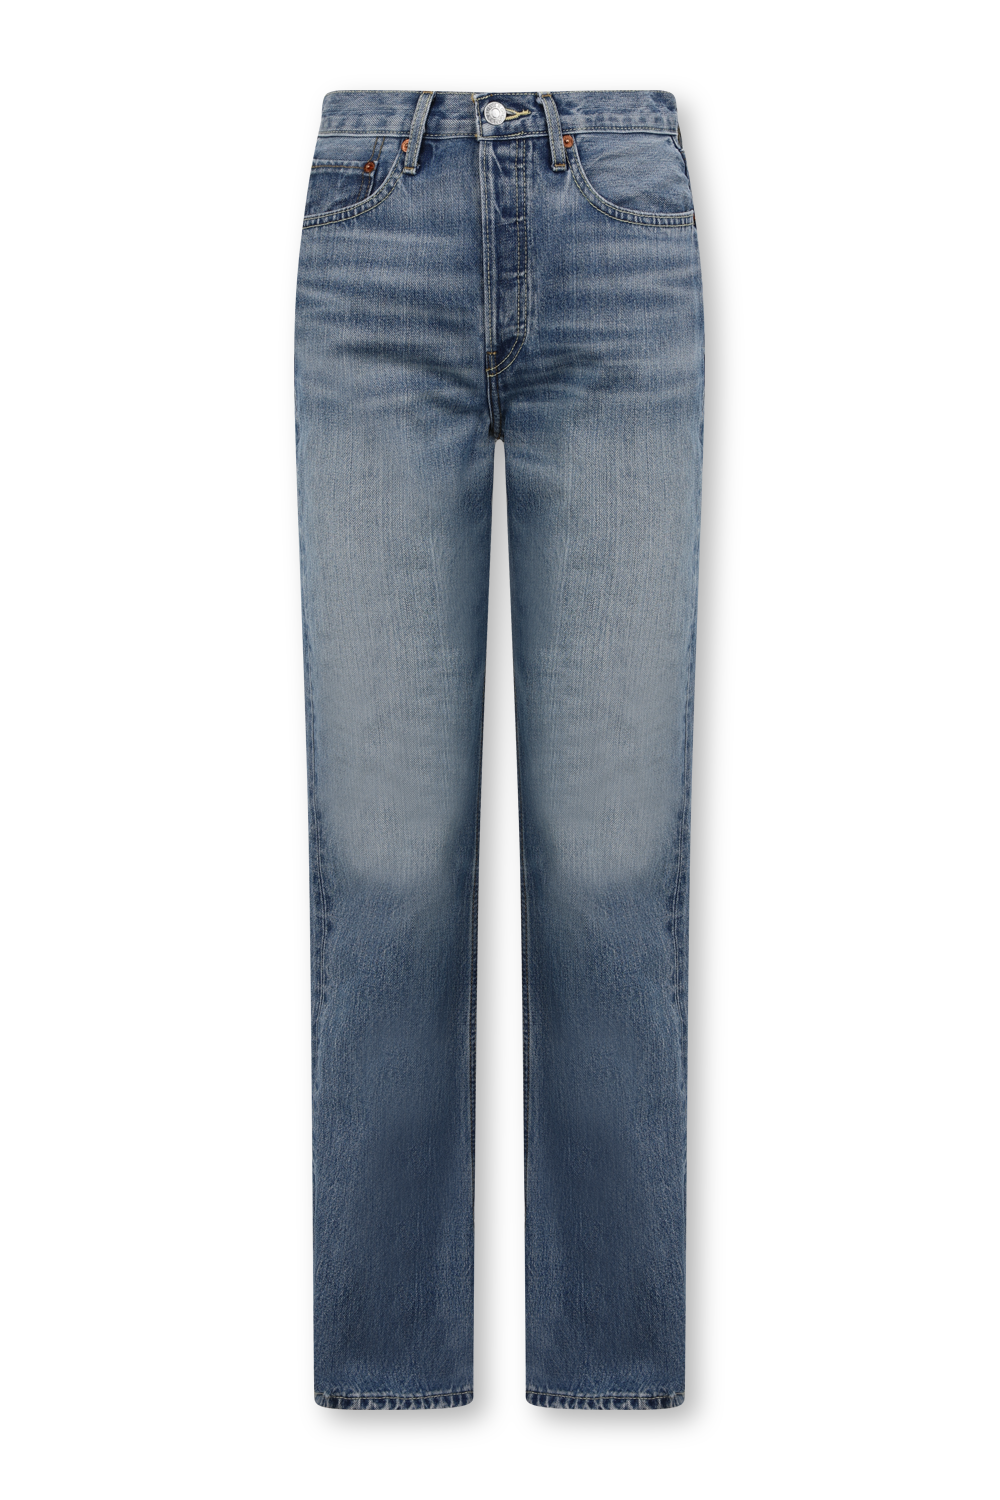 מכנסי ג'ינס שנות ה-70 בגזרה מתרחבת RE/DONE